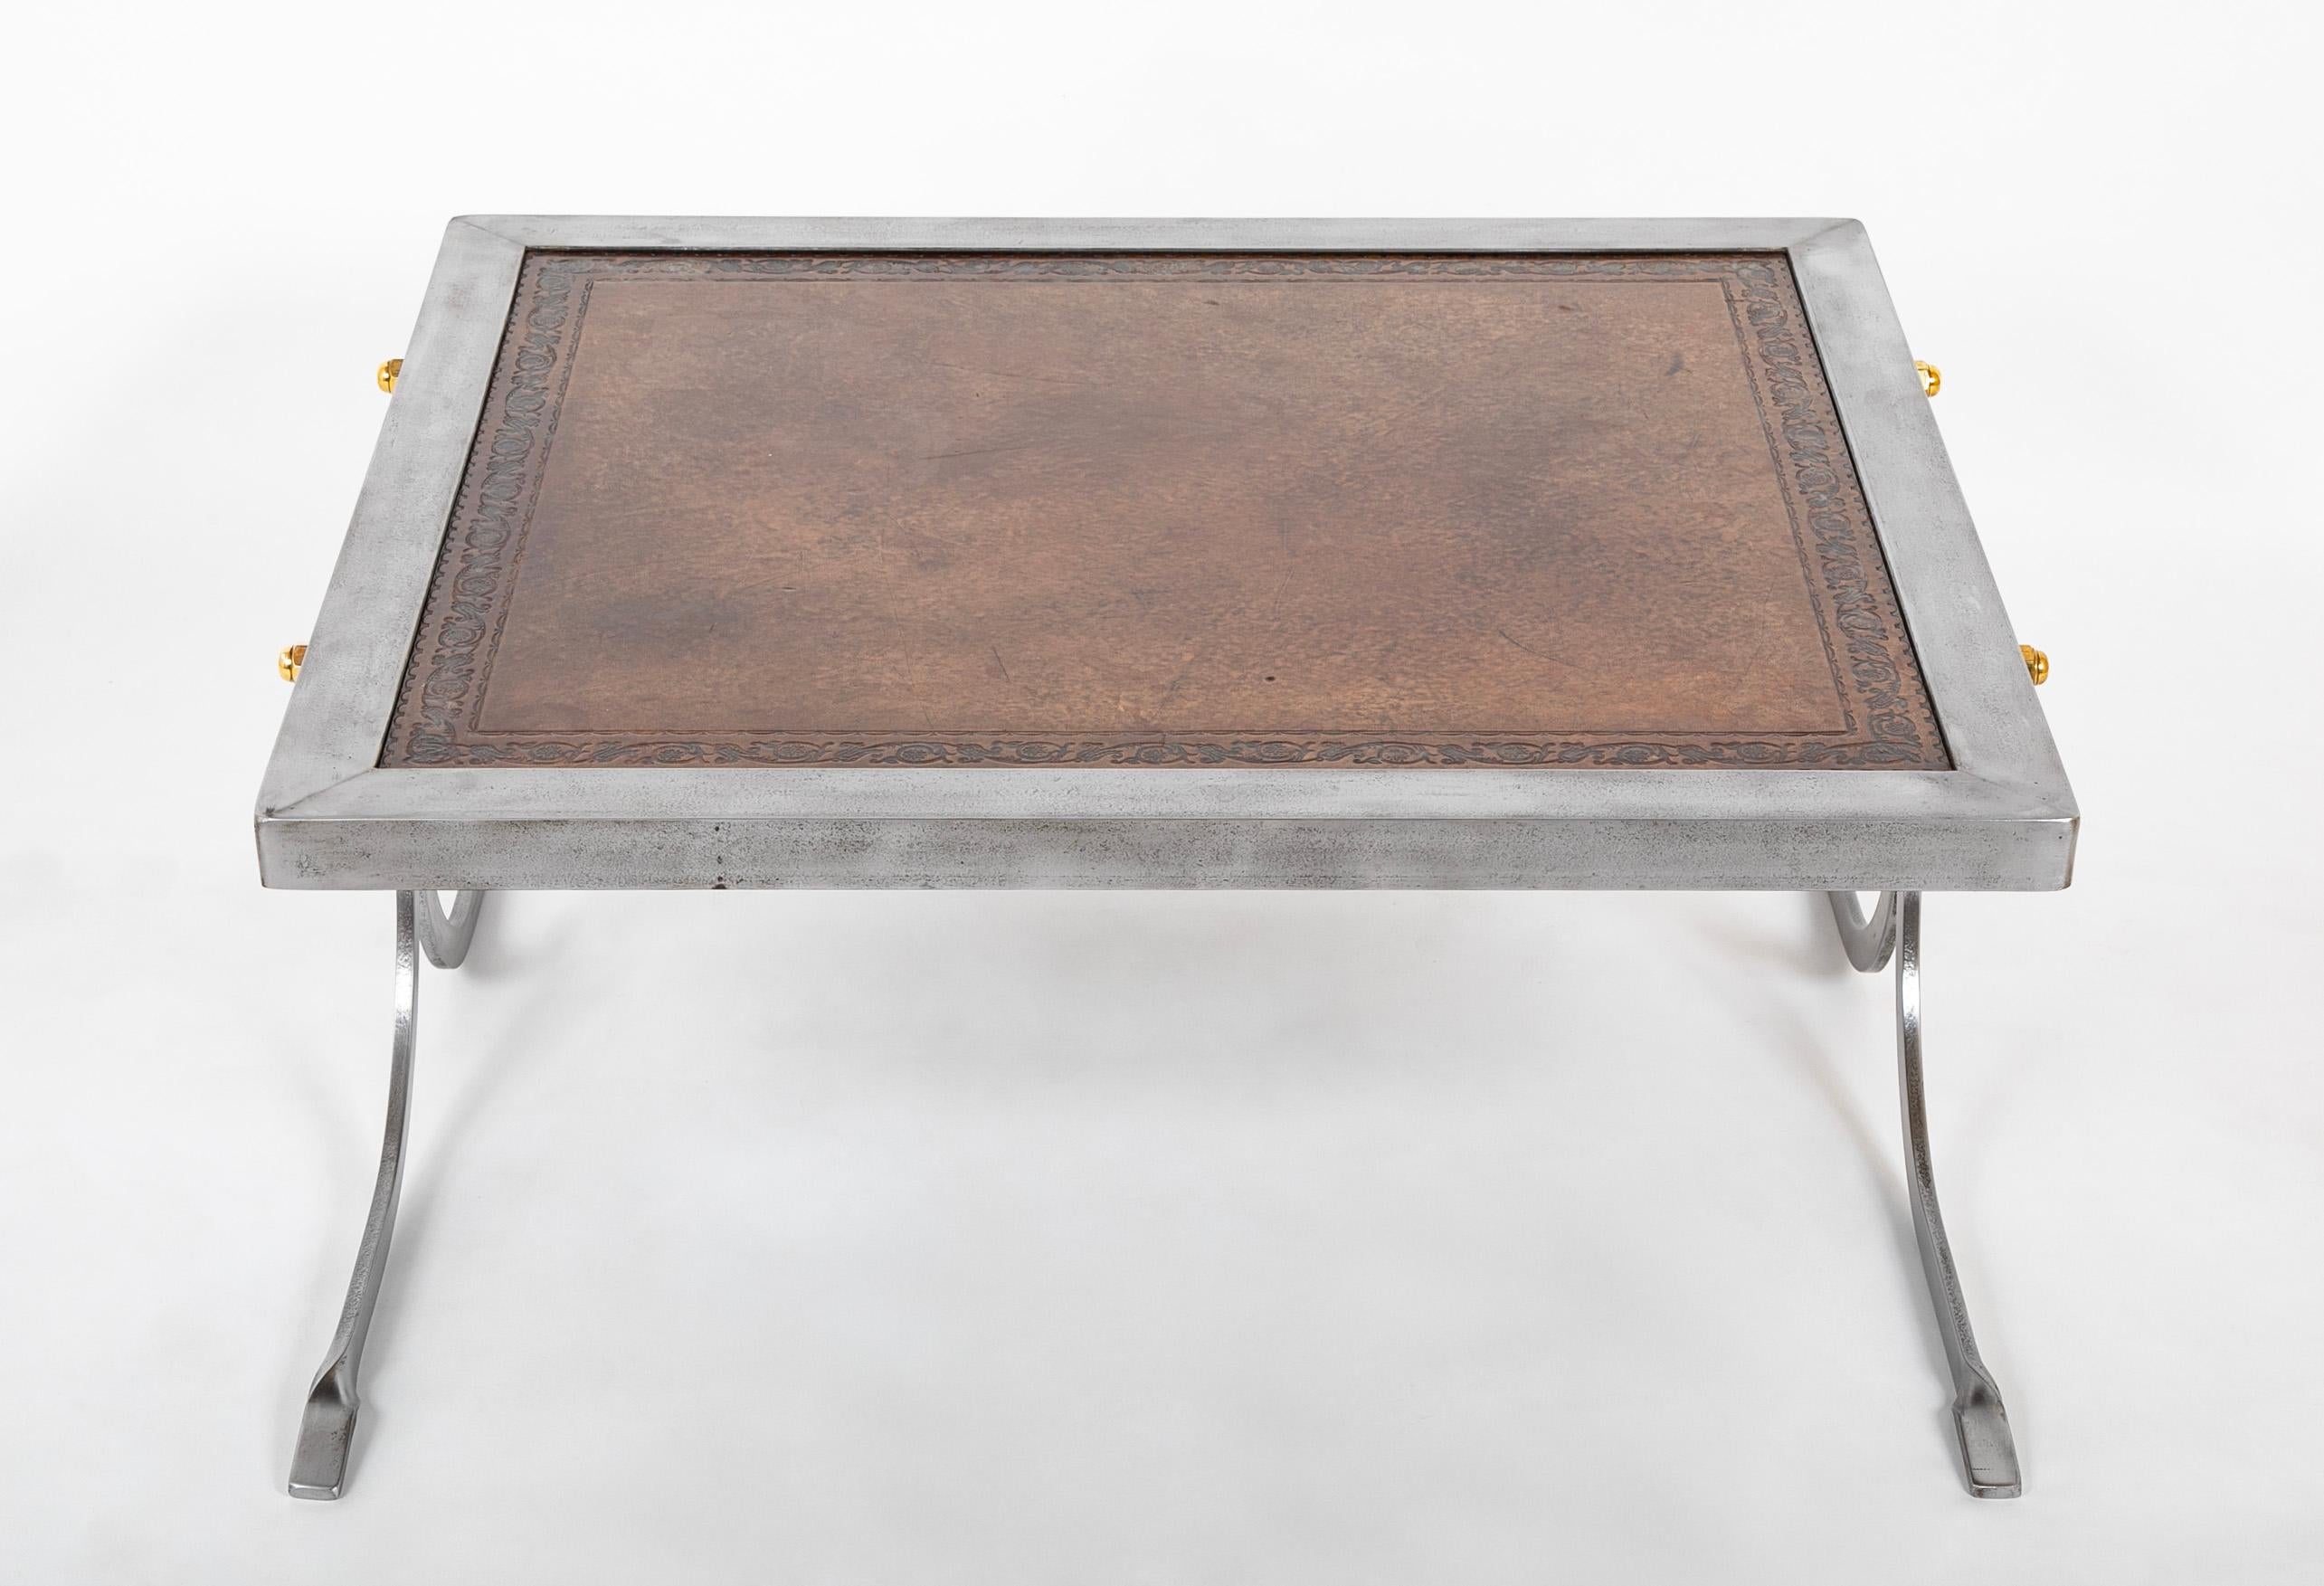 Dieser Tisch ist eine gelungene Verbindung von Moderne und Tradition: ein stromlinienförmiger Eisensockel, der mit Messingmuttern zusammengehalten wird, und eine klassische Lederplatte mit dekorativem Rand. Das schlichte Profil, eine Hommage an Jean